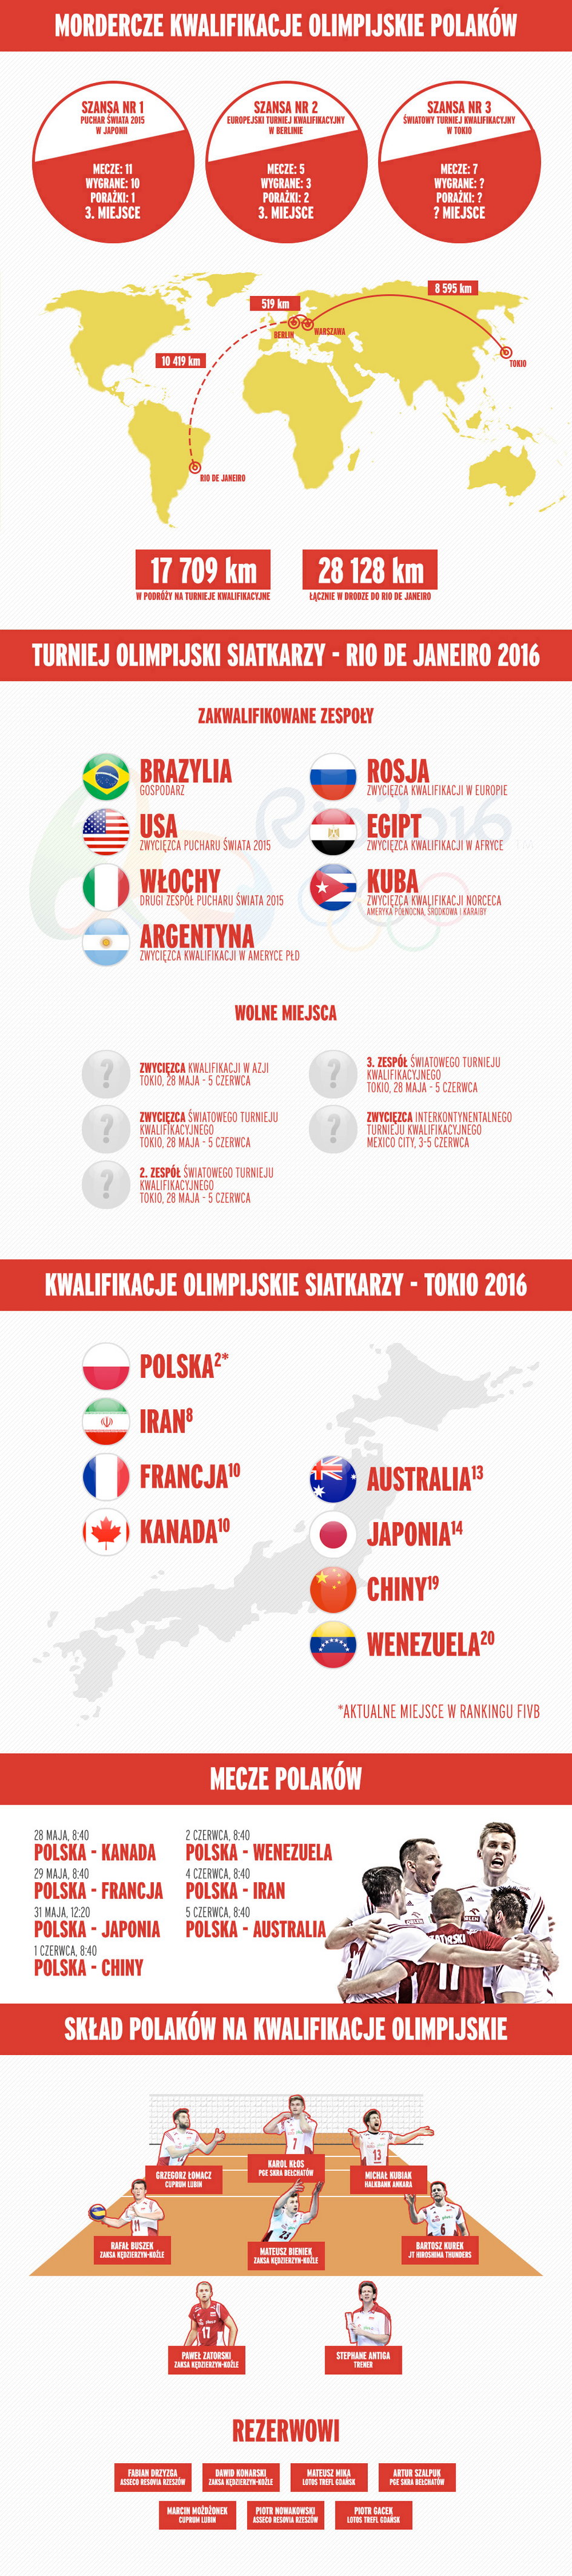 Mordercze kwalifikacje Polaków - infografika